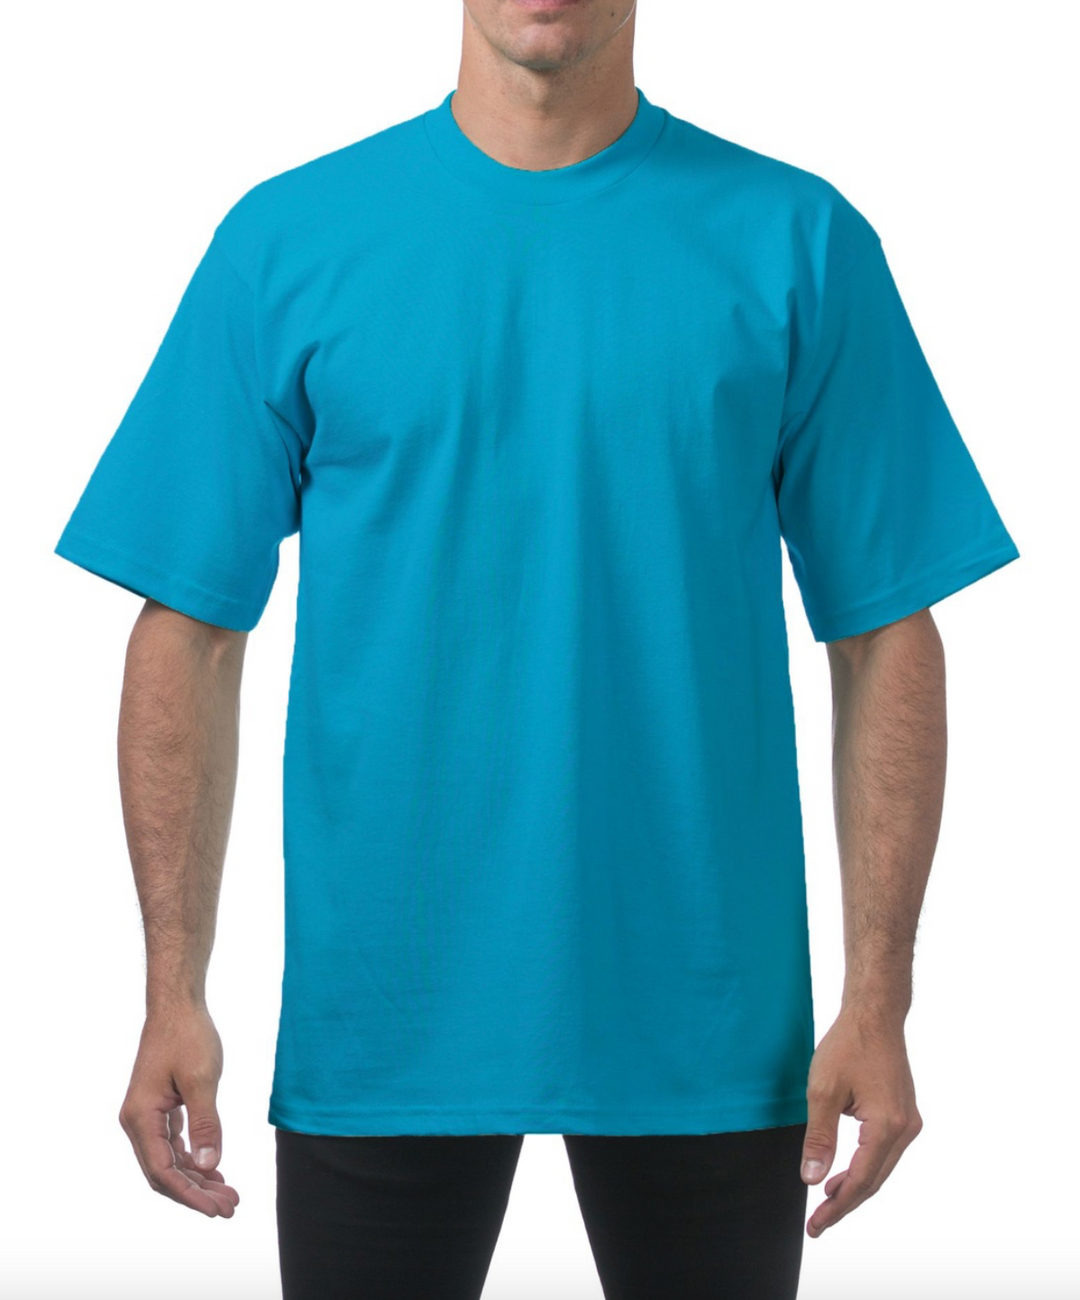 (Turquoise) Men's Heavyweight Short Sleeve Tee